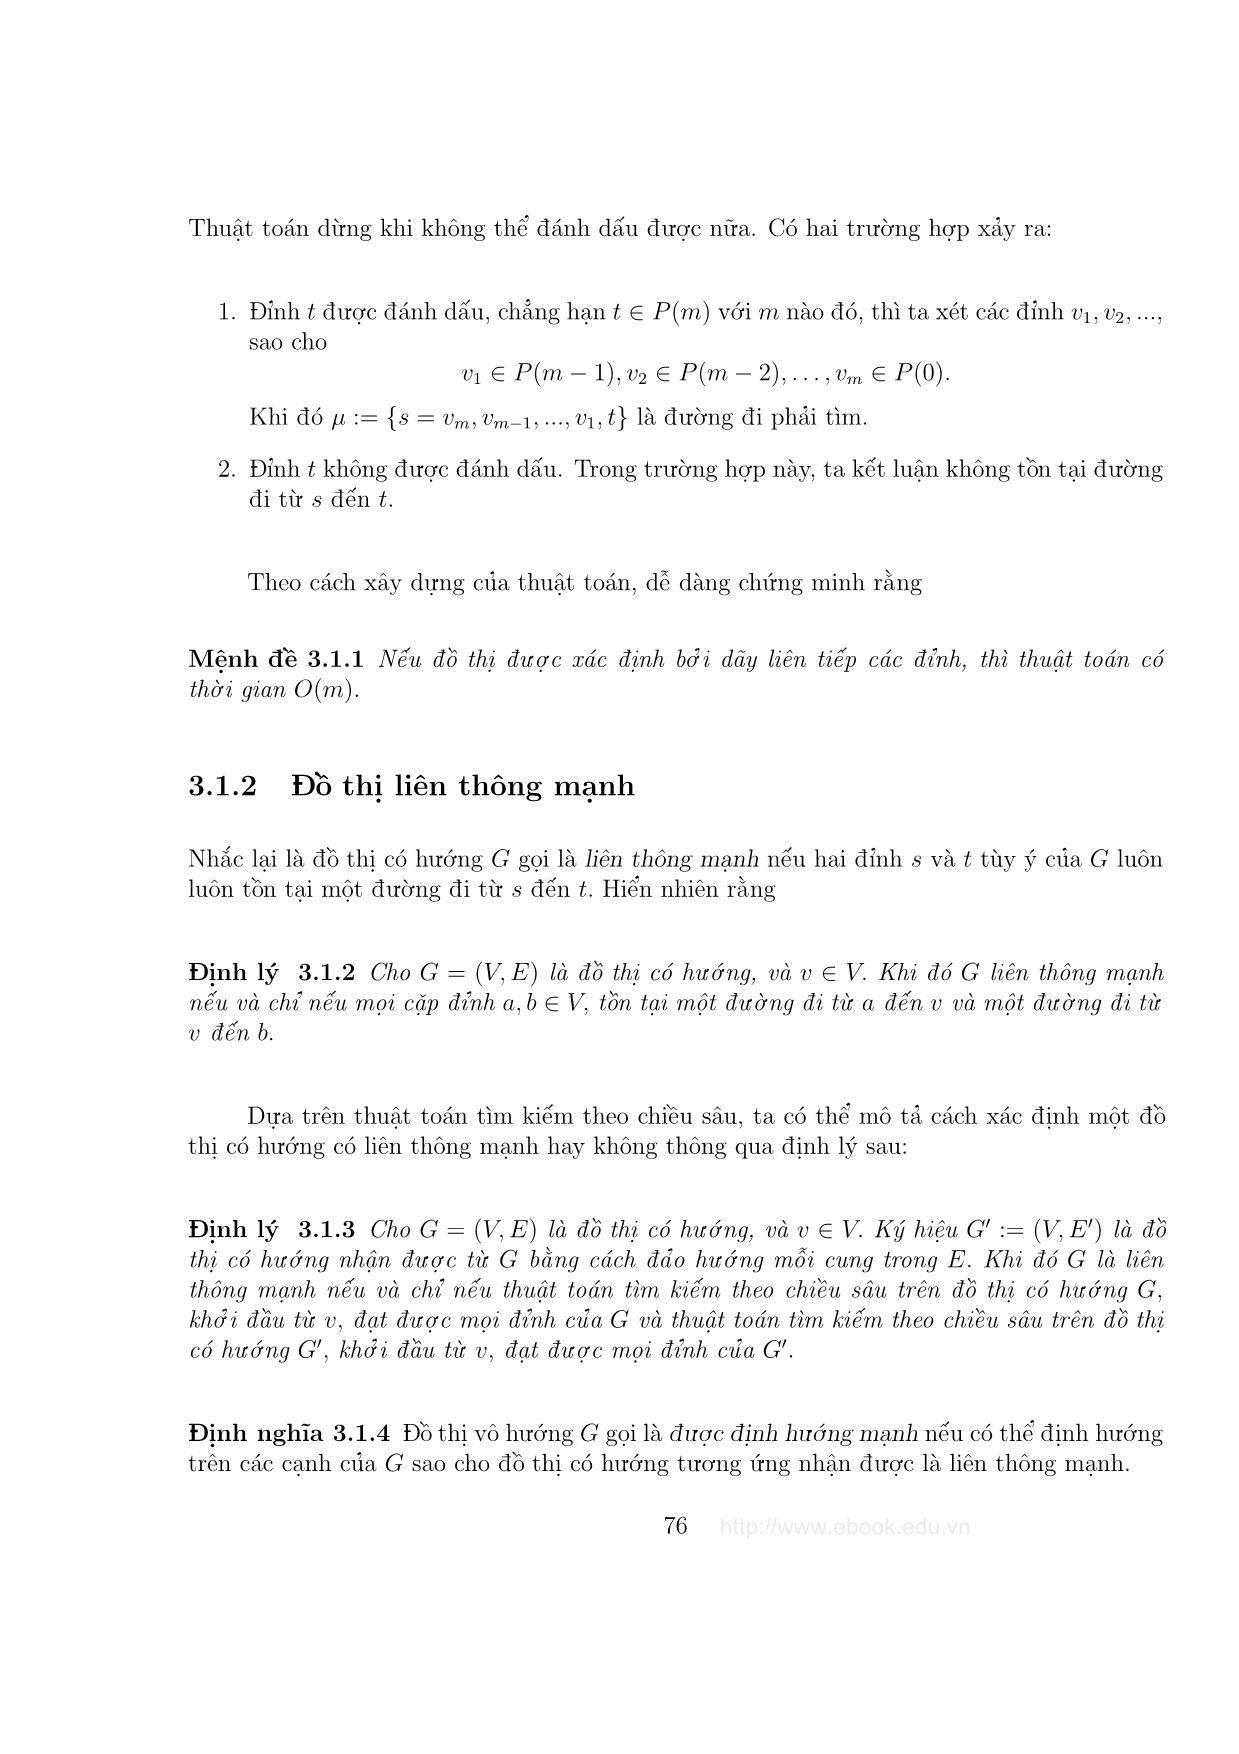 Giáo trình Đồ thị và các thuật toán - Chương 3: Các bài toán về đường đi trang 2